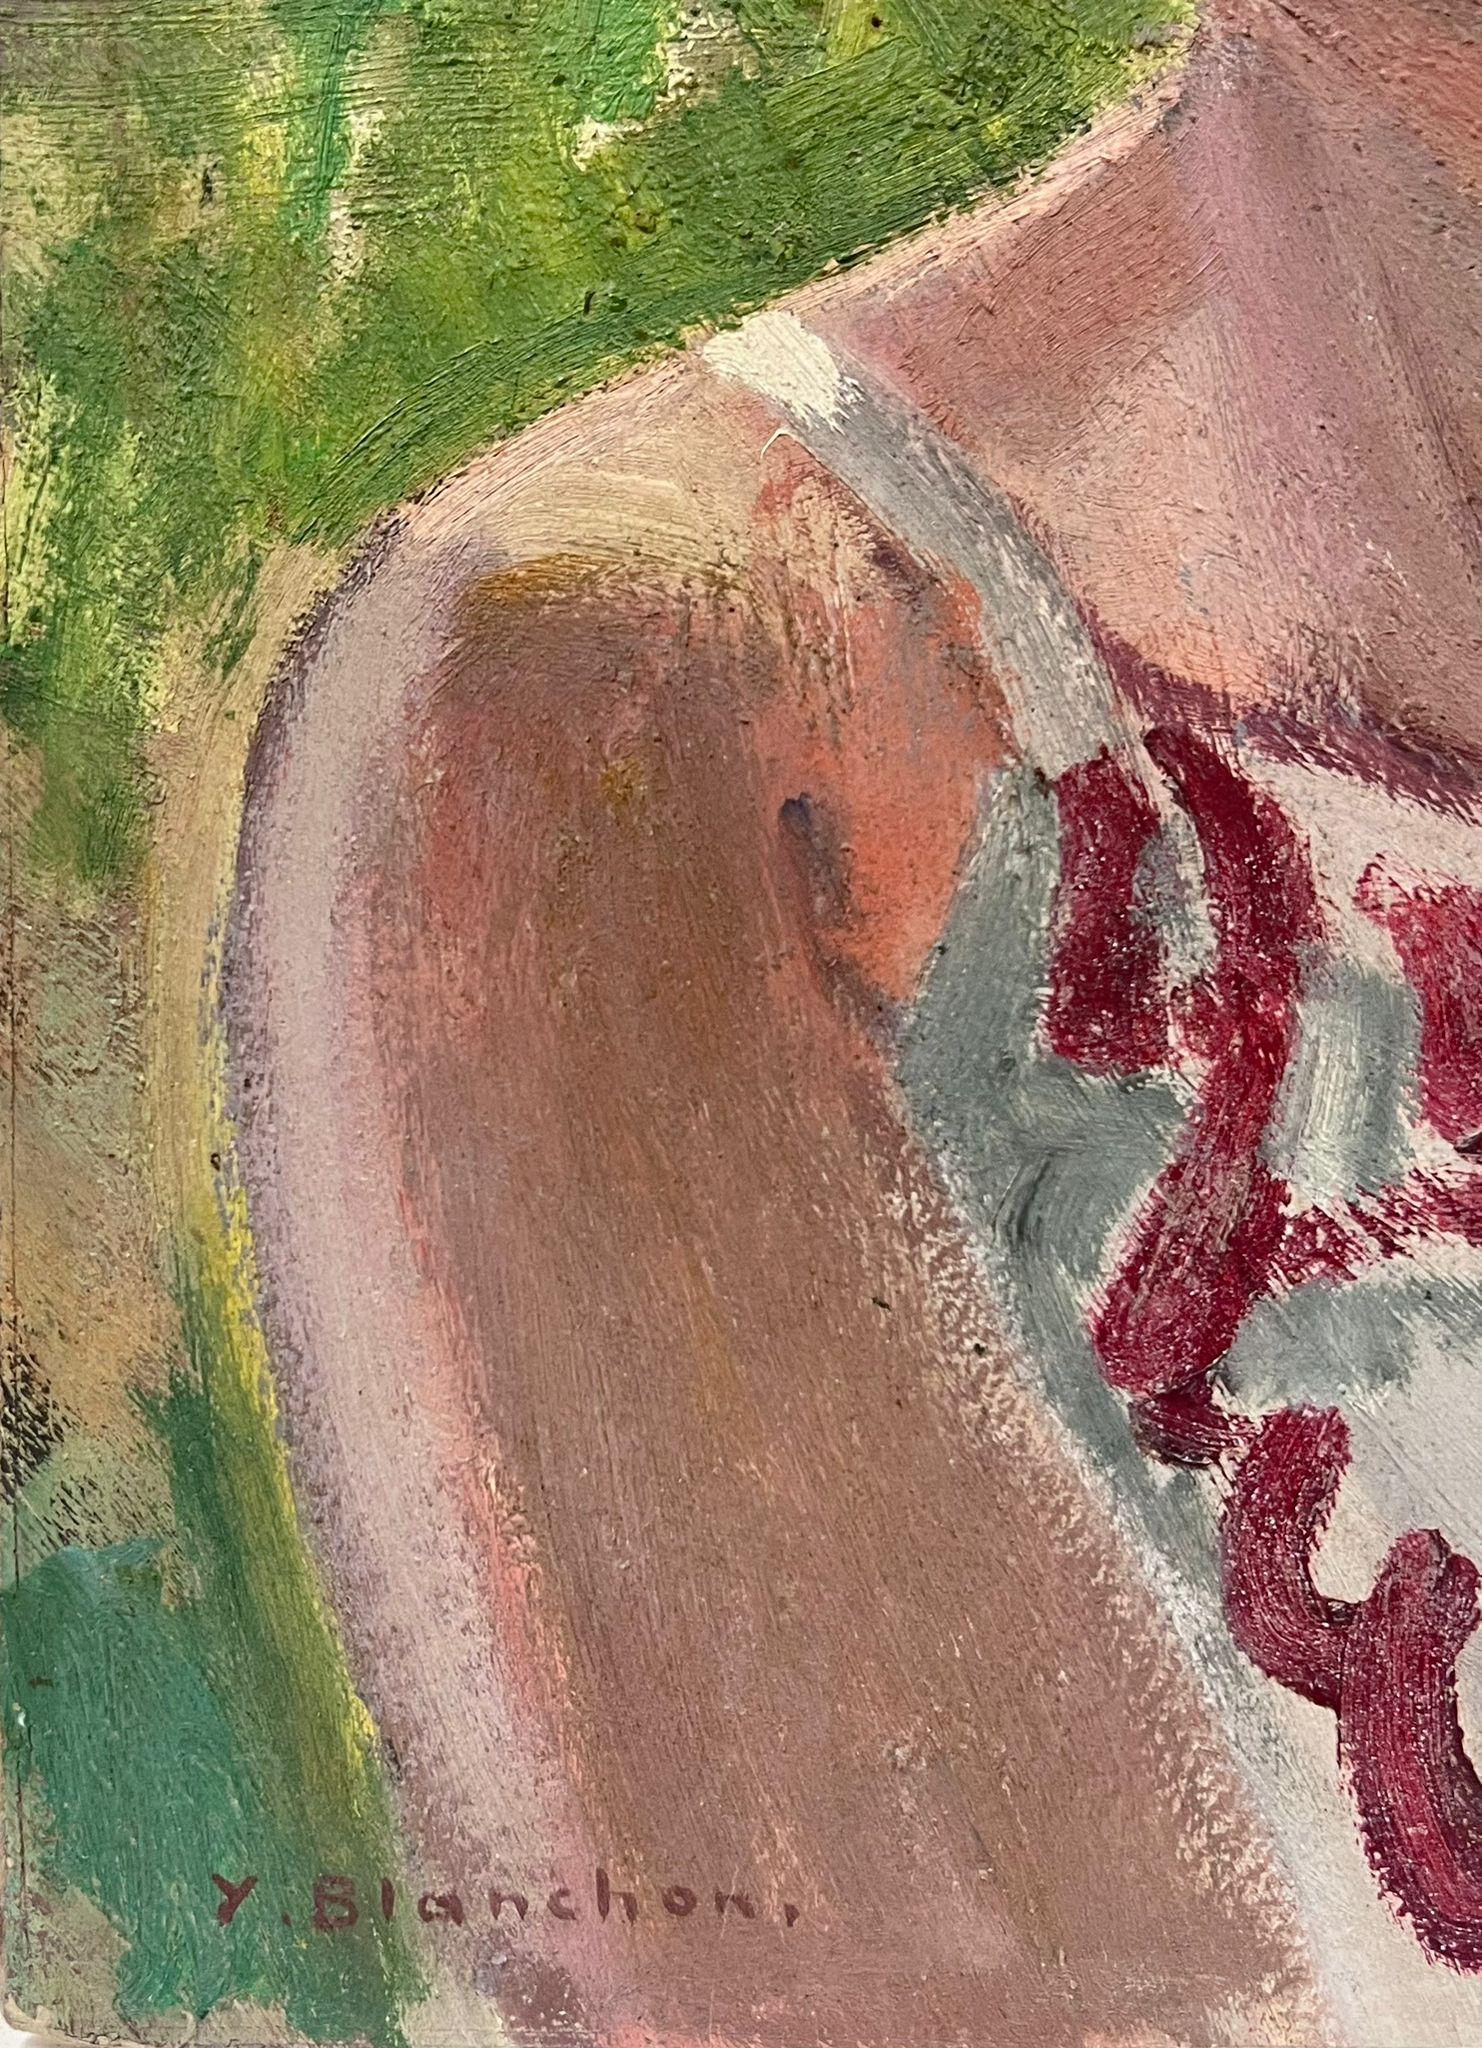 Französisches Porträt
von Y. Blanchon, französischer Impressionist der 1950er Jahre 
Öl auf Karton, ungerahmt
Gemälde: 18 x 15 Zoll
Provenienz: aus einer großen Privatsammlung dieses Künstlers in Nordfrankreich
Zustand: originaler, guter und